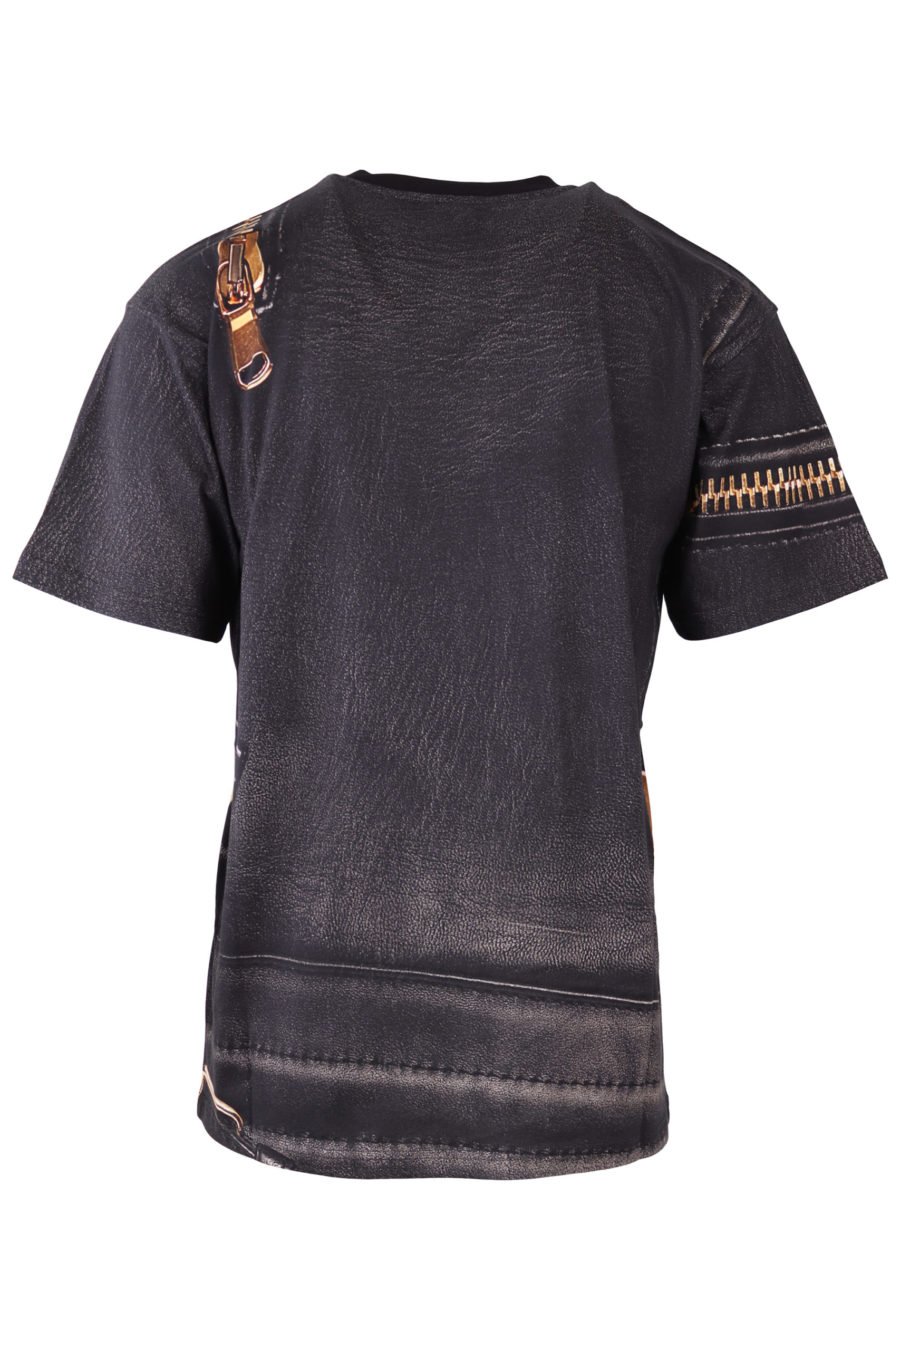 T-shirt Moschino Couture schwarz mit goldenem Reißverschluss - IMG 6516 skaliert